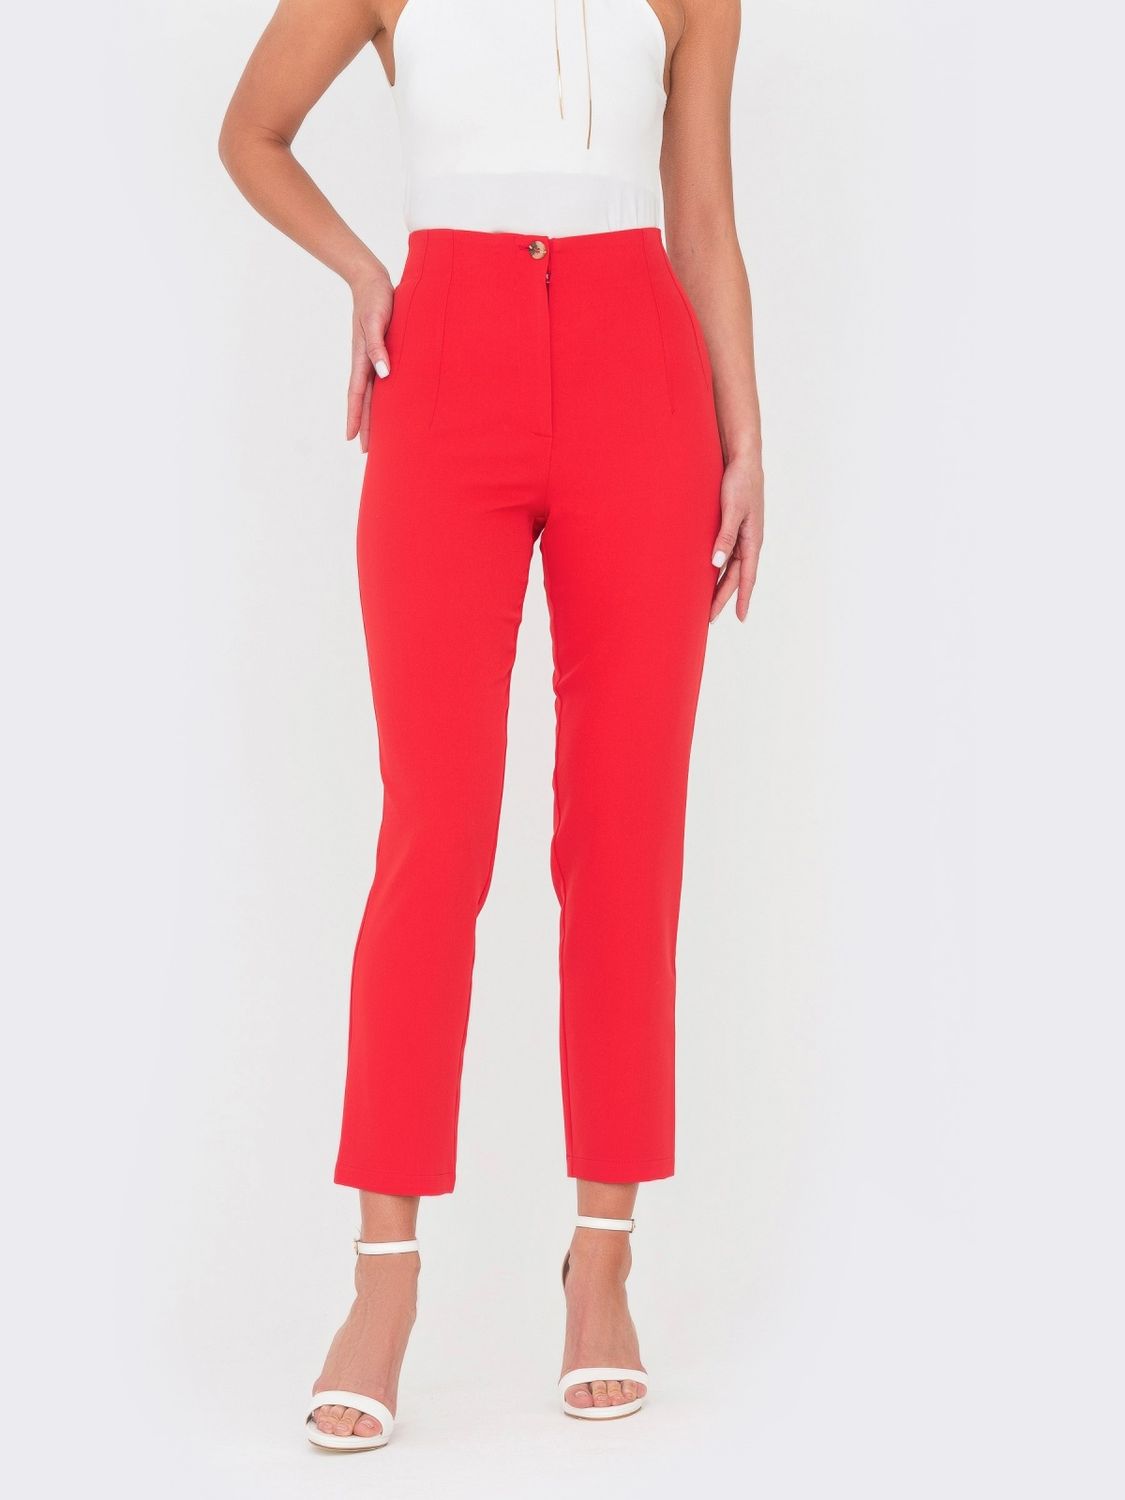 Укороченные брюки с завышенной талией красного цвета - фото